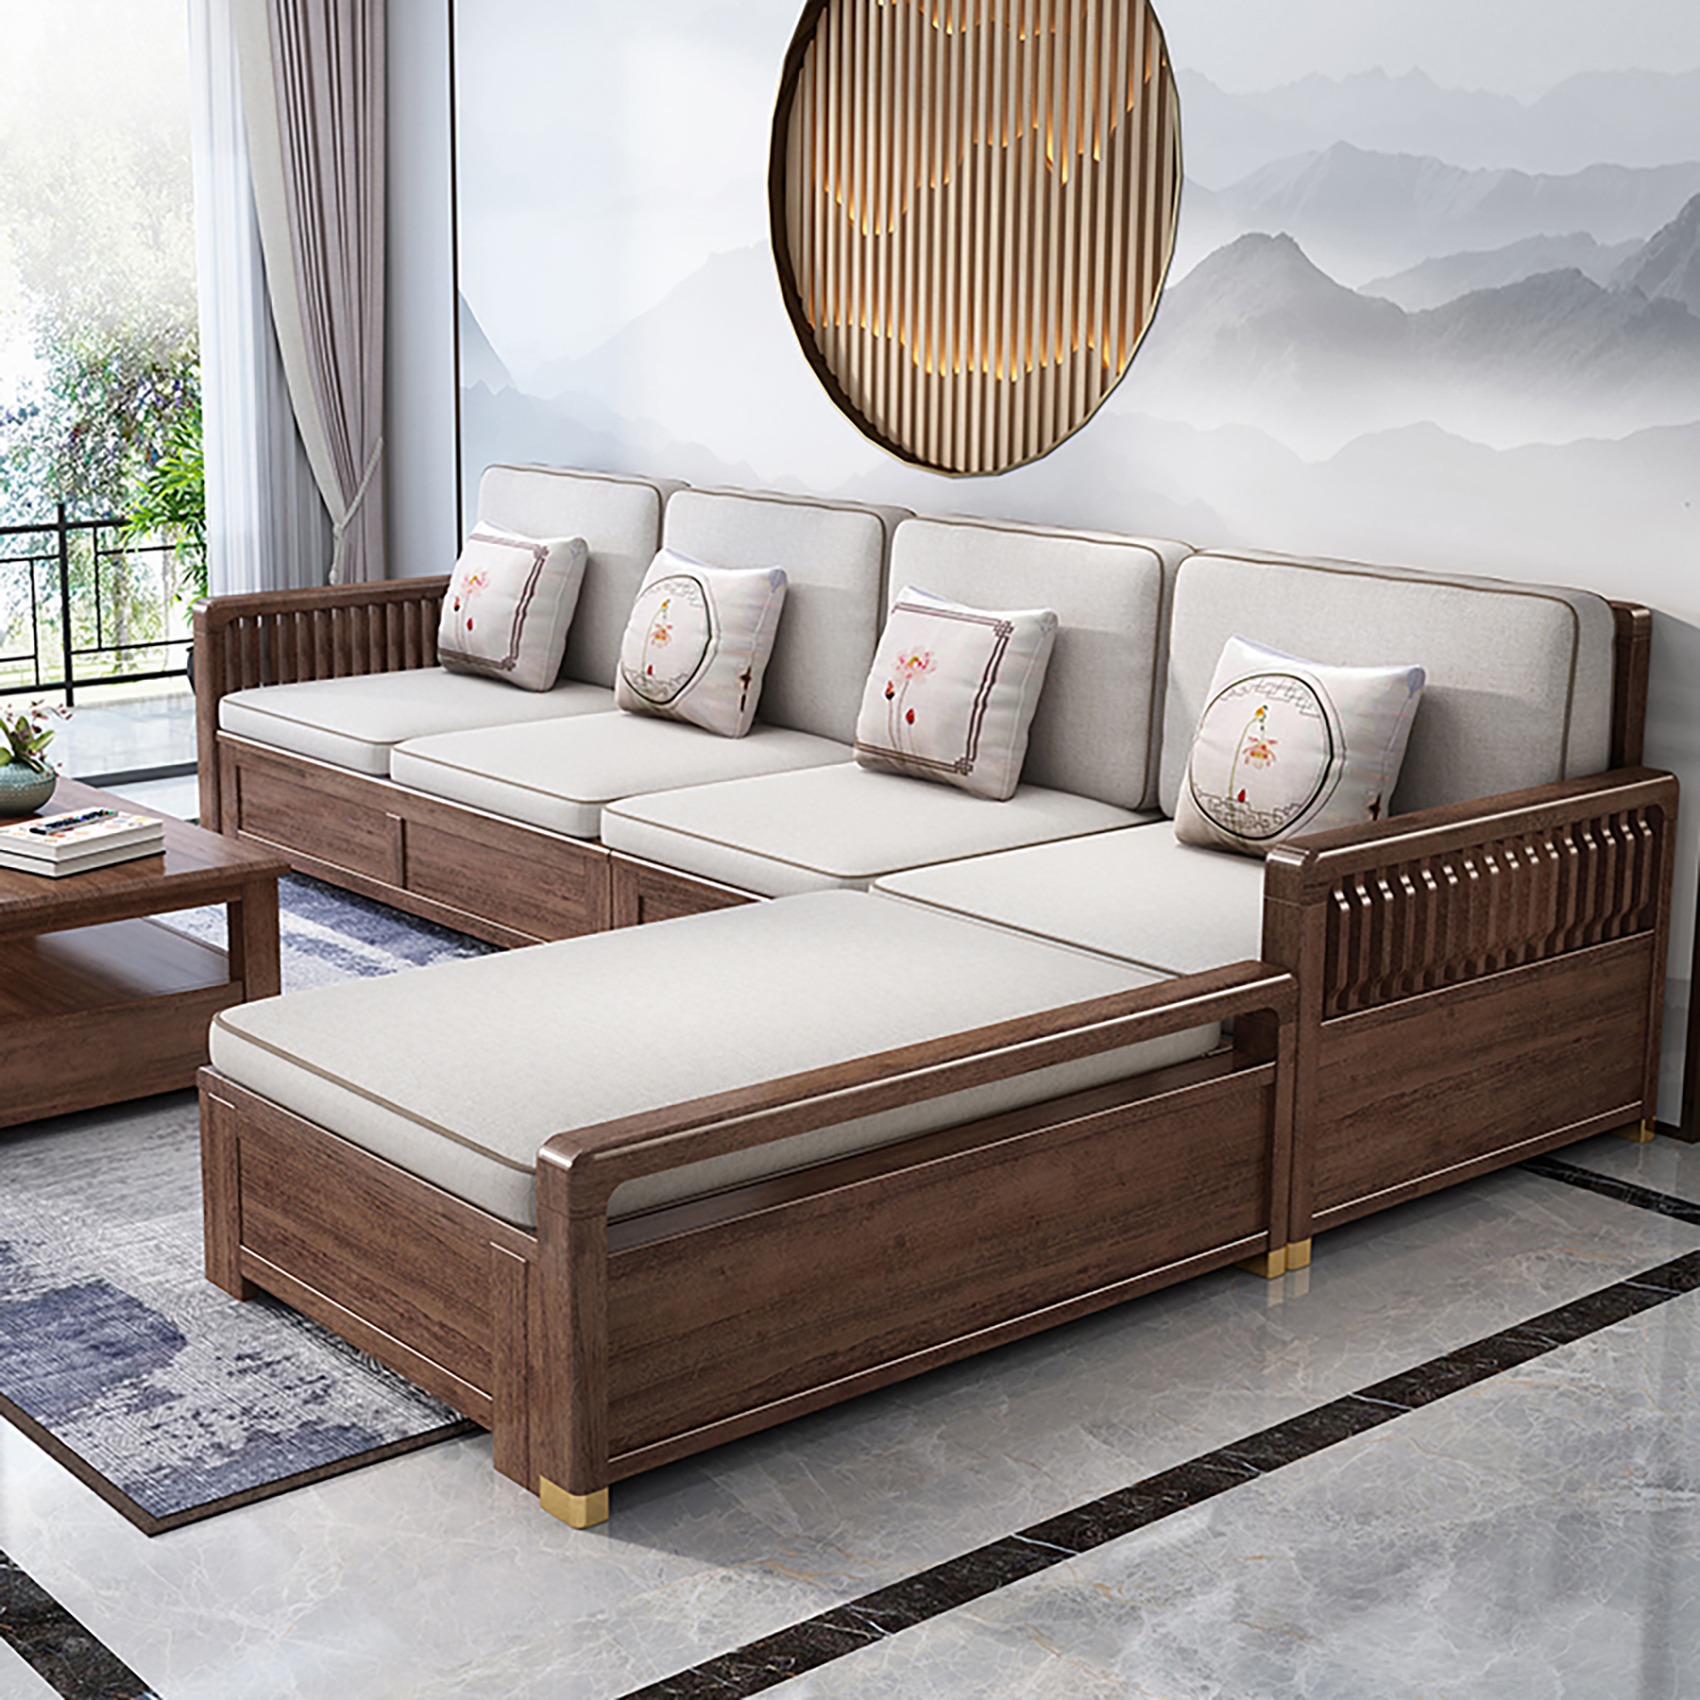 新中式客厅实木沙发